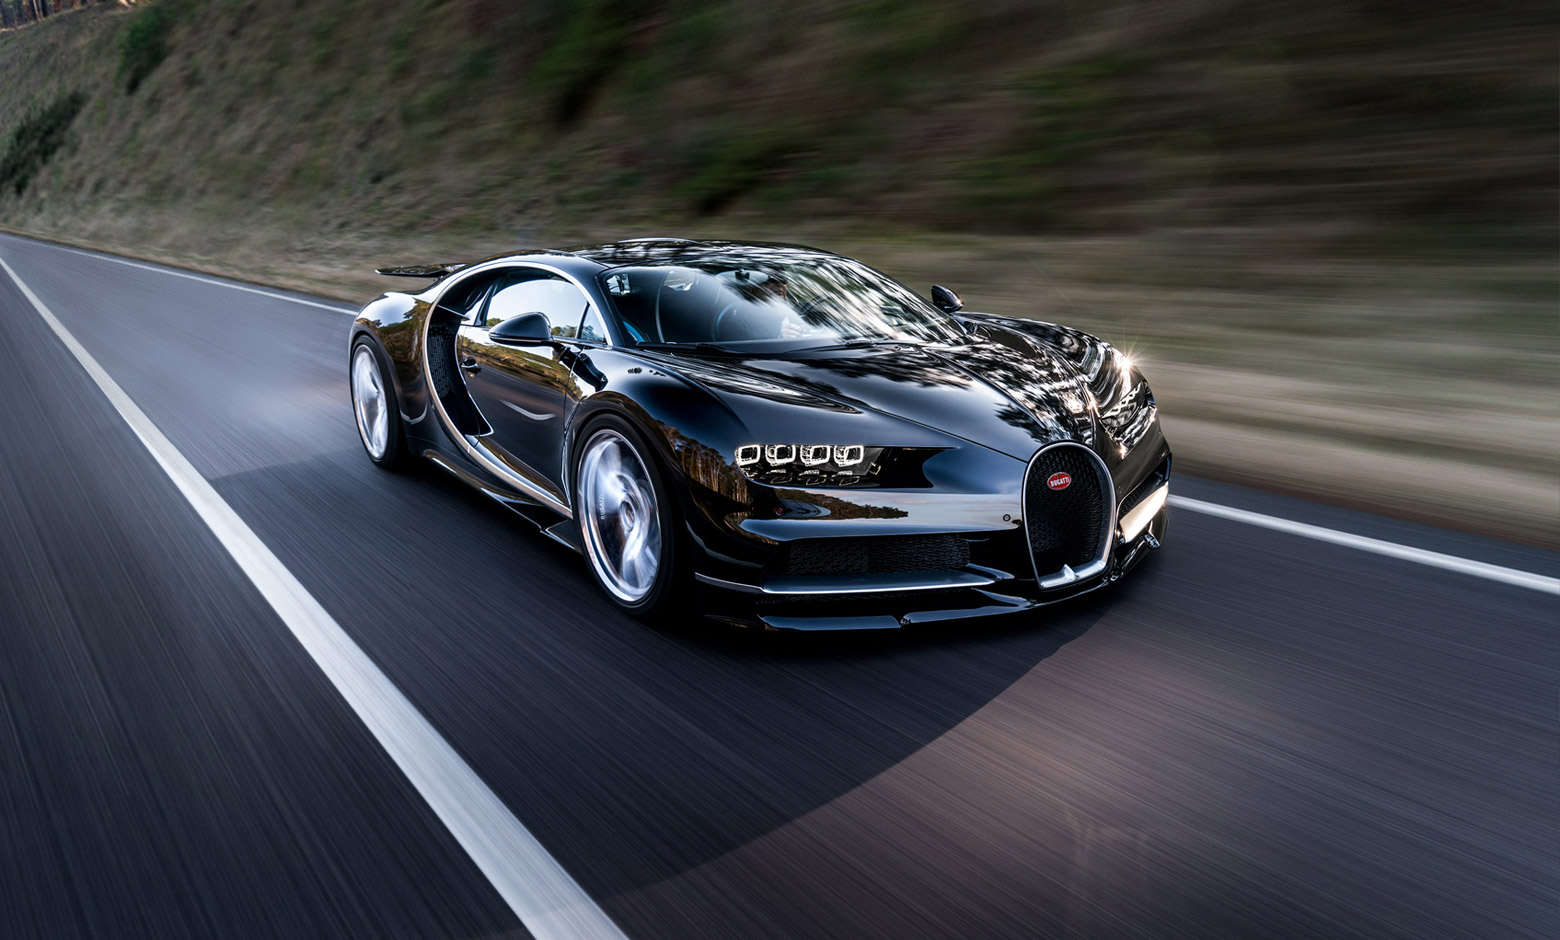 Bugatti Chiron: Bugatti Chiron là một trong những loại siêu xe hạng sang đắt giá nhất thế giới. Với tốc độ tối đa 490 km/h, nó không chỉ là một biểu tượng của sự sang trọng, mà còn là sự kết hợp giữa tốc độ và sức mạnh. Hãy cùng chiêm ngưỡng những hình ảnh đẹp nhất về Bugatti Chiron và cảm nhận cảm giác thăng hoa của tốc độ. Translation: Bugatti Chiron is one of the world\'s most expensive luxury supercars. With a maximum speed of 490 km/h, it\'s not only a symbol of luxury but also a combination of speed and power. Let\'s admire the most beautiful pictures of Bugatti Chiron and feel the exhilaration of speed.